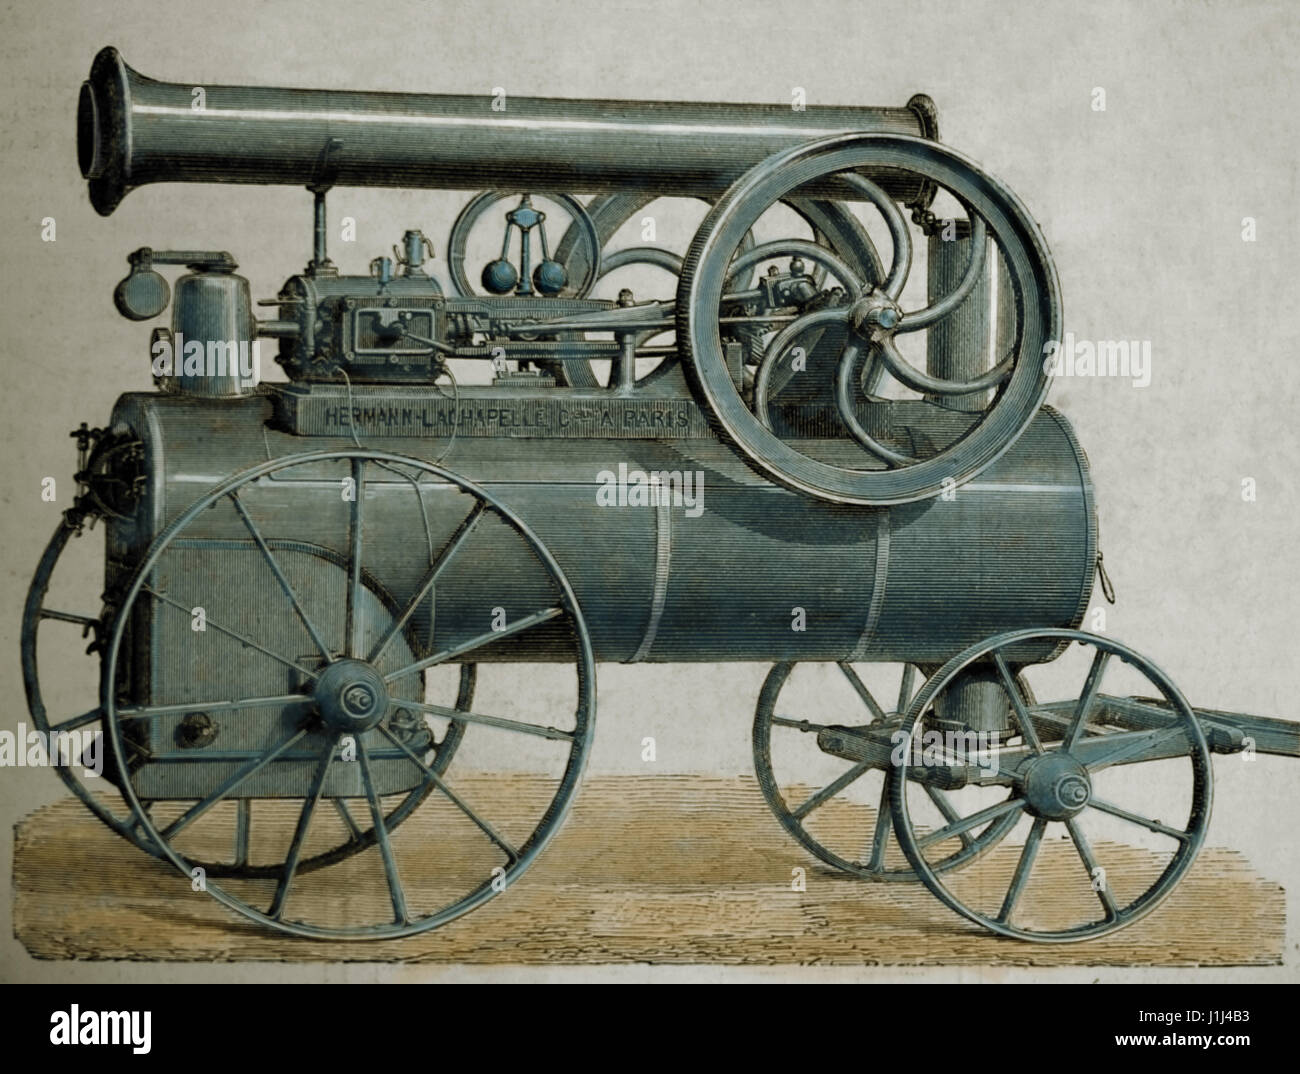 Locomotora de vapor horizontales sobre ruedas, construido por Hermann-Lachapelle. Grabado, 1875. La Ilustración española y americana. Edición en español. Foto de stock